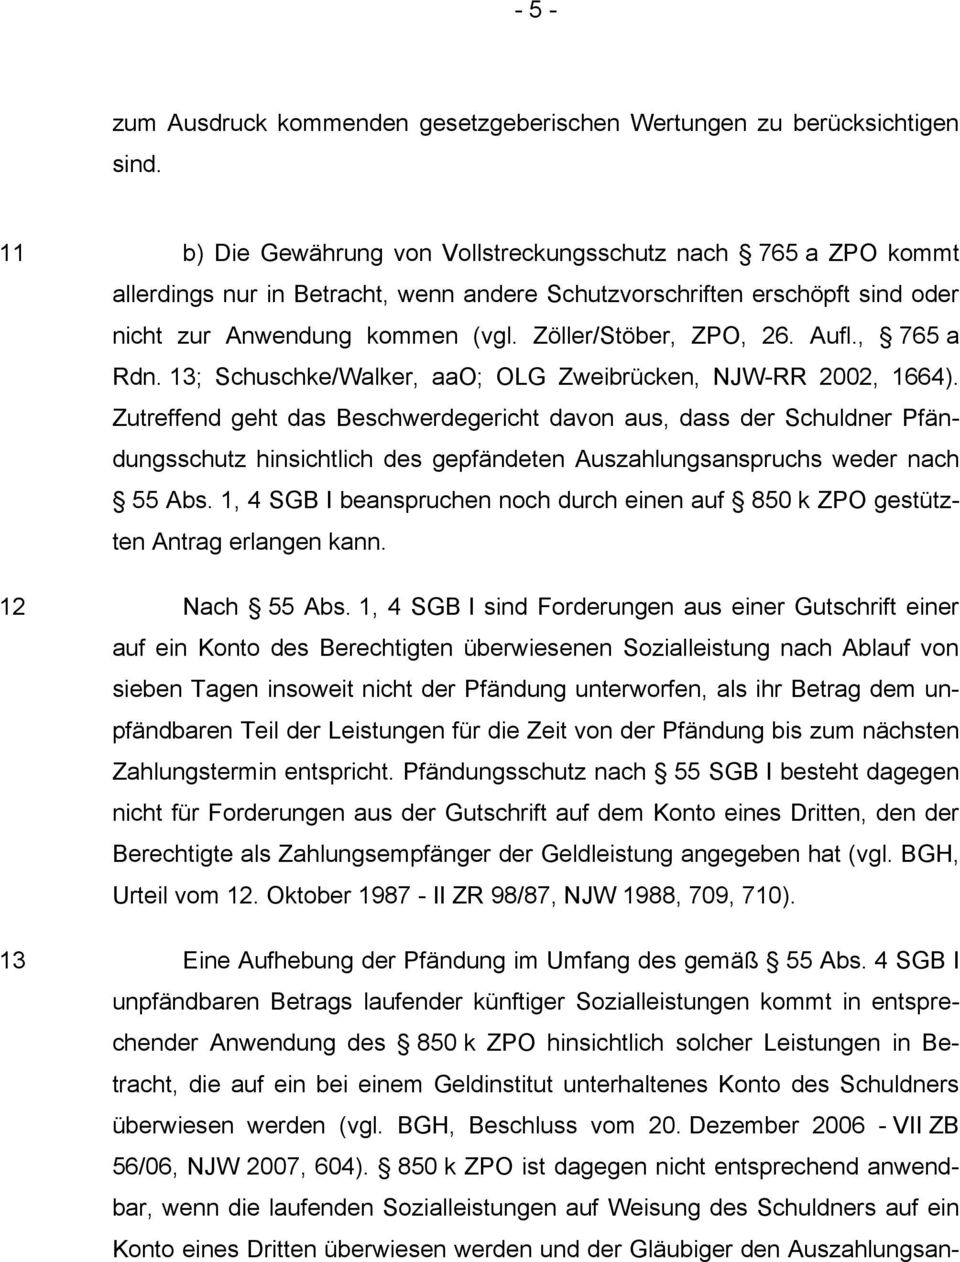 Zöller/Stöber, ZPO, 26. Aufl., 765 a Rdn. 13; Schuschke/Walker, aao; OLG Zweibrücken, NJW-RR 2002, 1664).